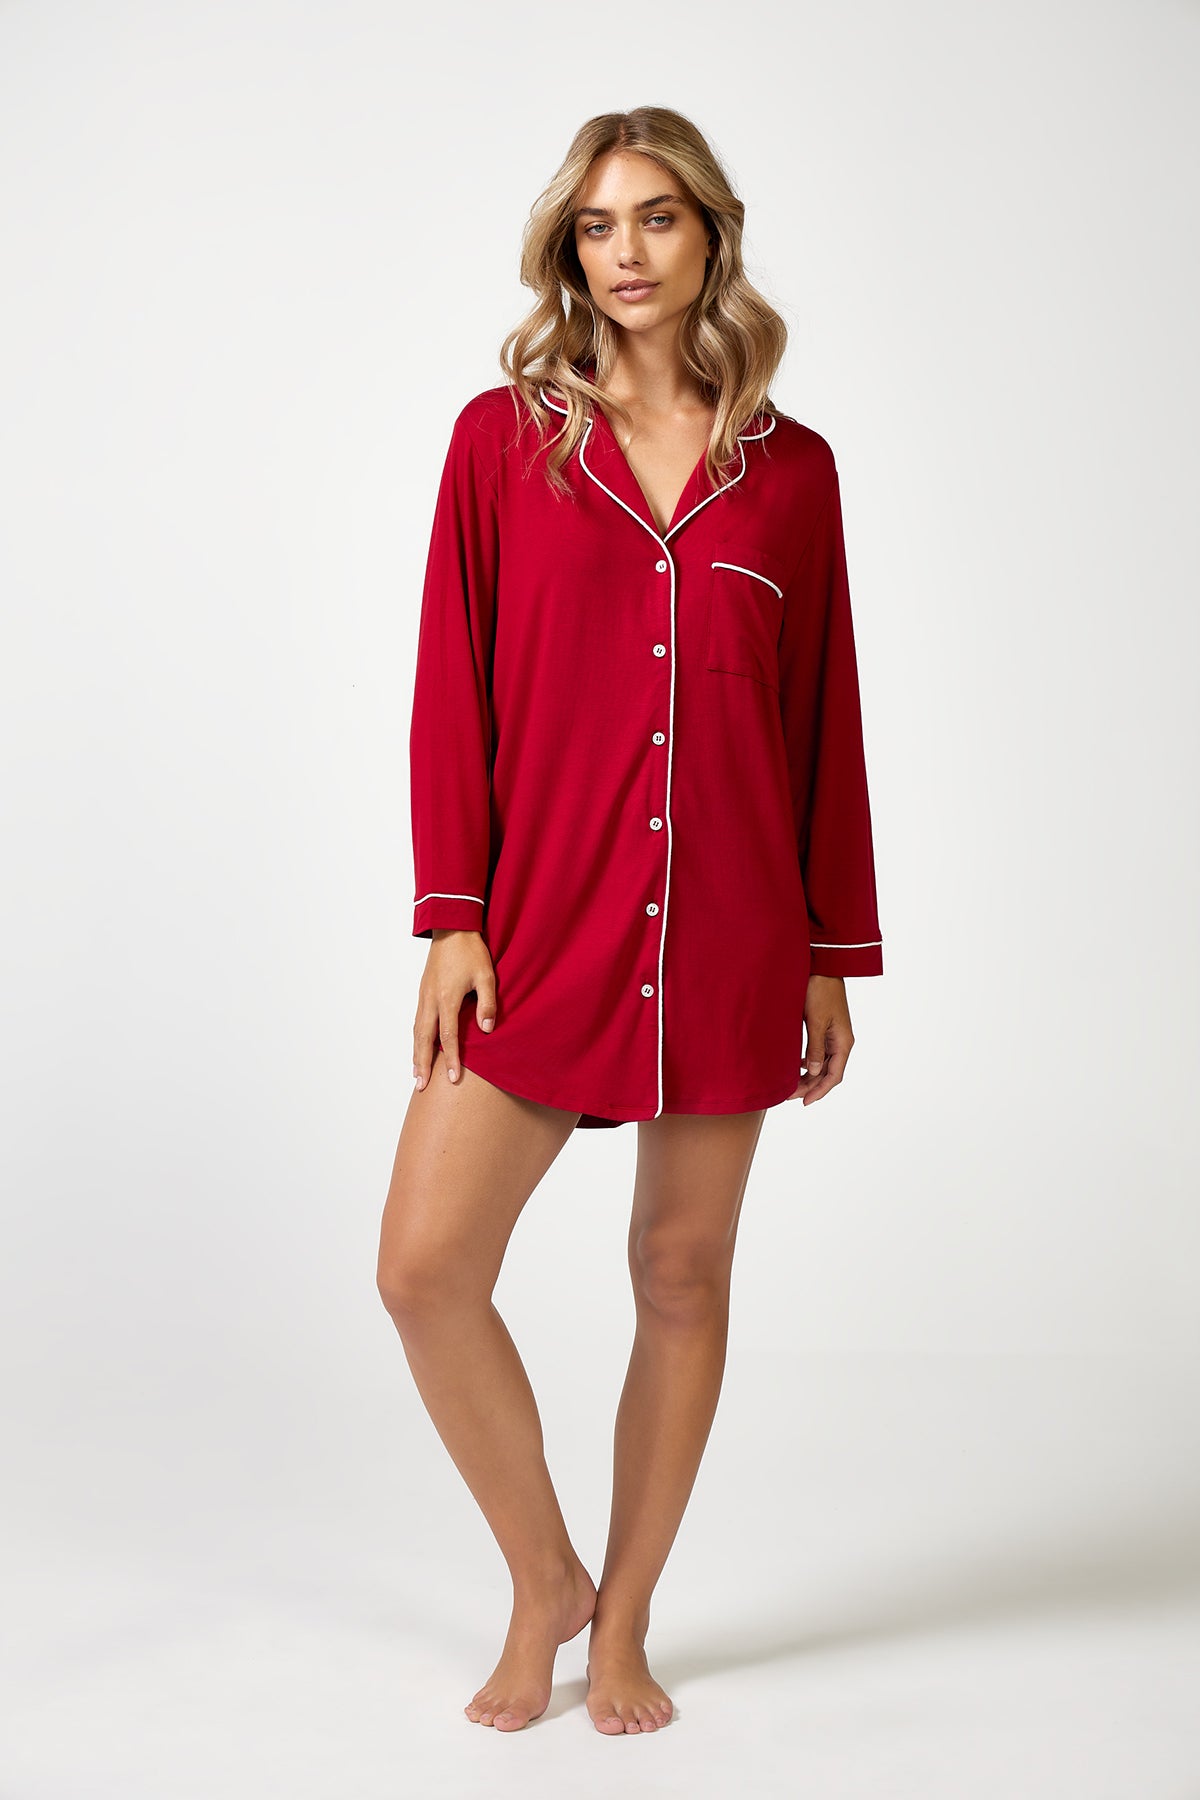 The Night Shirt Red - Pyjamas - POCO by Pippa